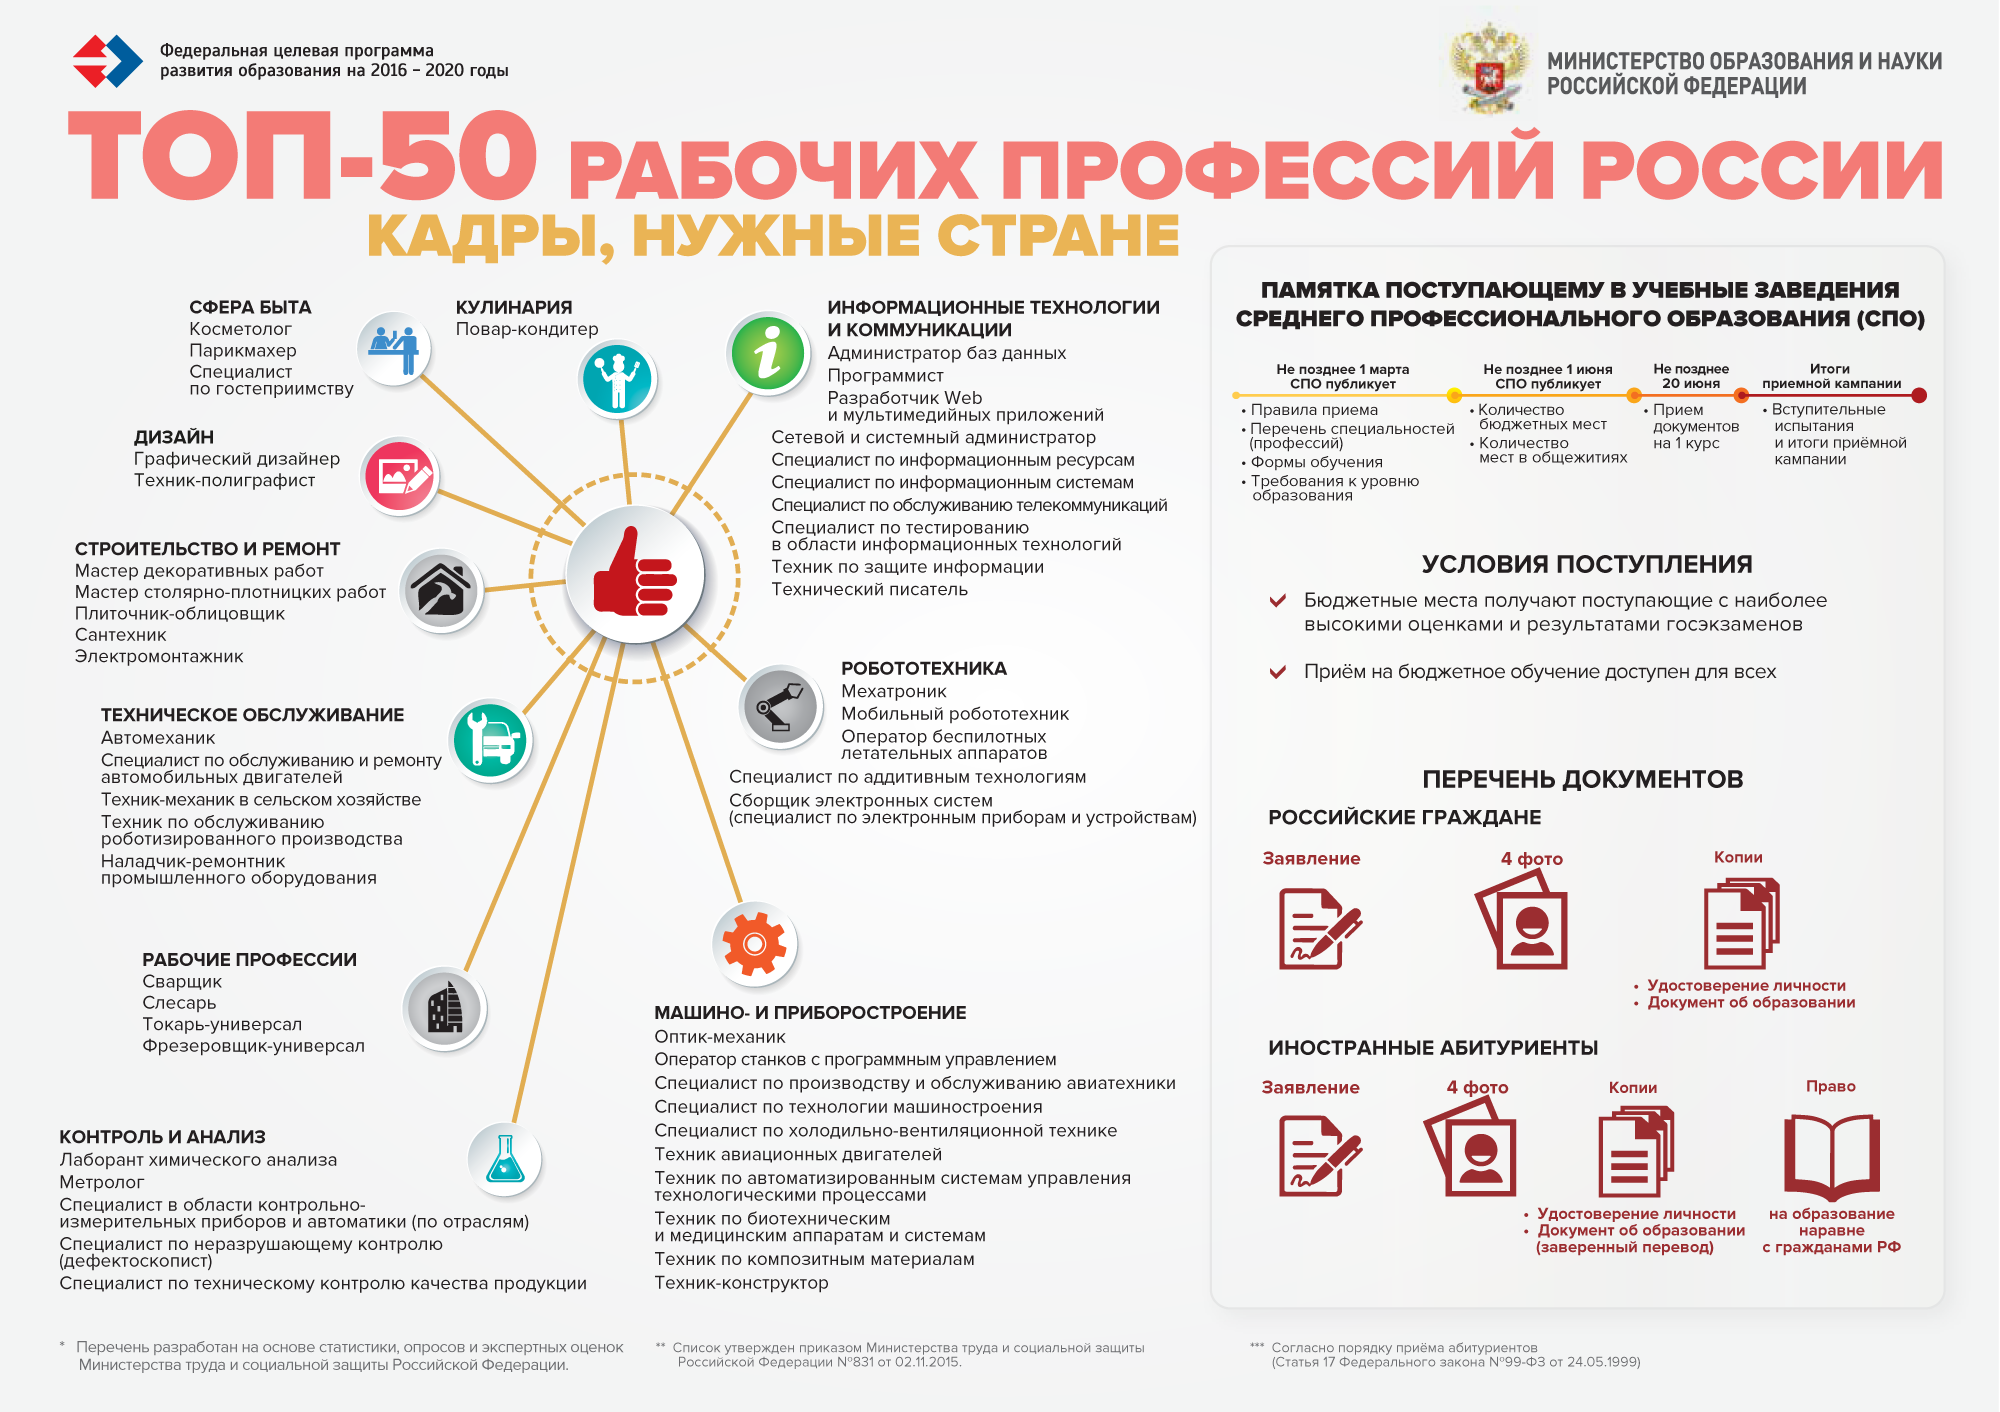 ТОП-50 рабочих профессий России: кадры, нужные стране